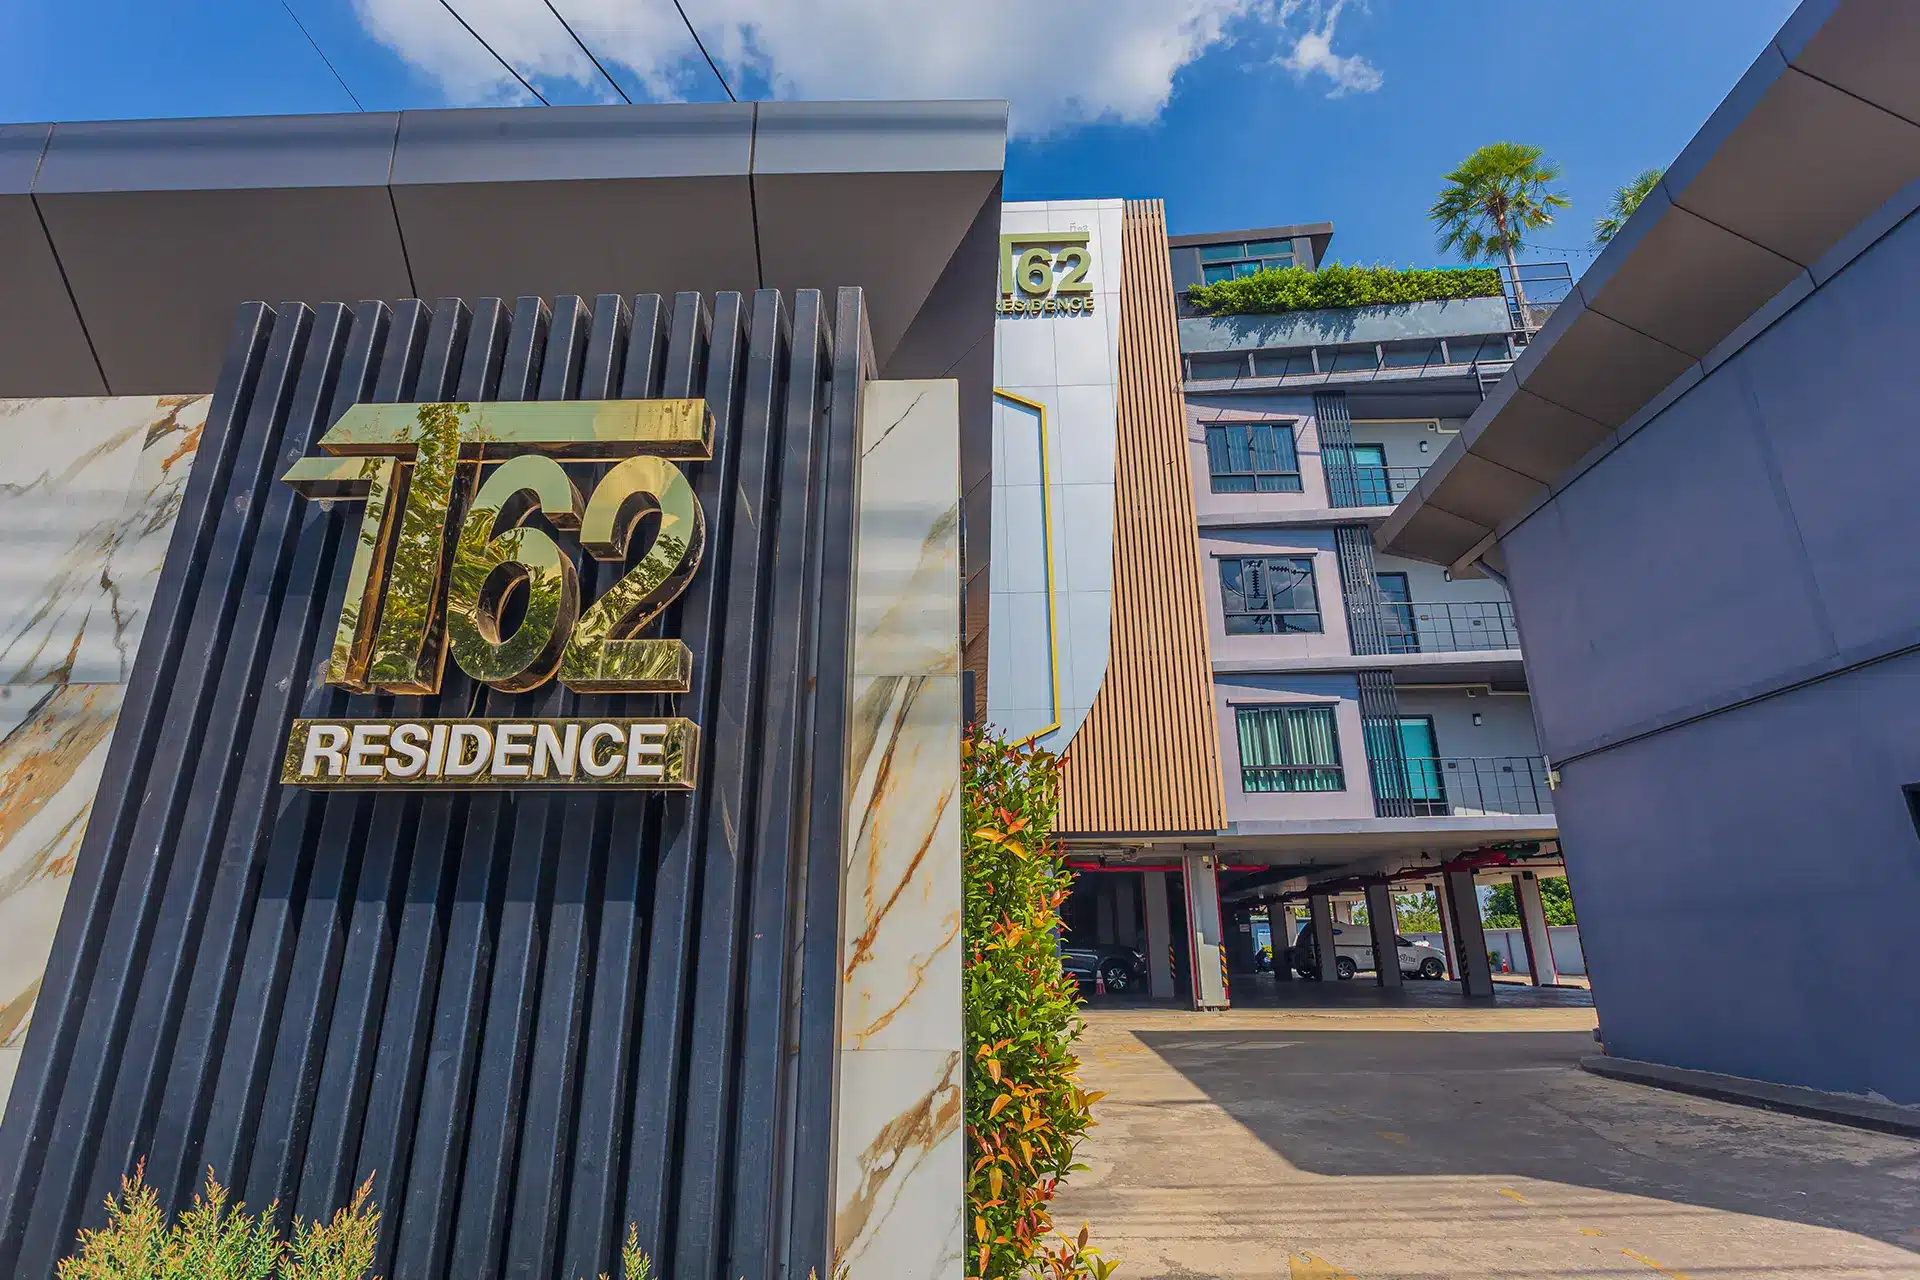 โรงแรม T62Residence ที่พักคลอง 5 ตำบล รังสิต คลองหลวง ธัญบุรี ปทุมธานี ห้องพักรายวันคลอง 5